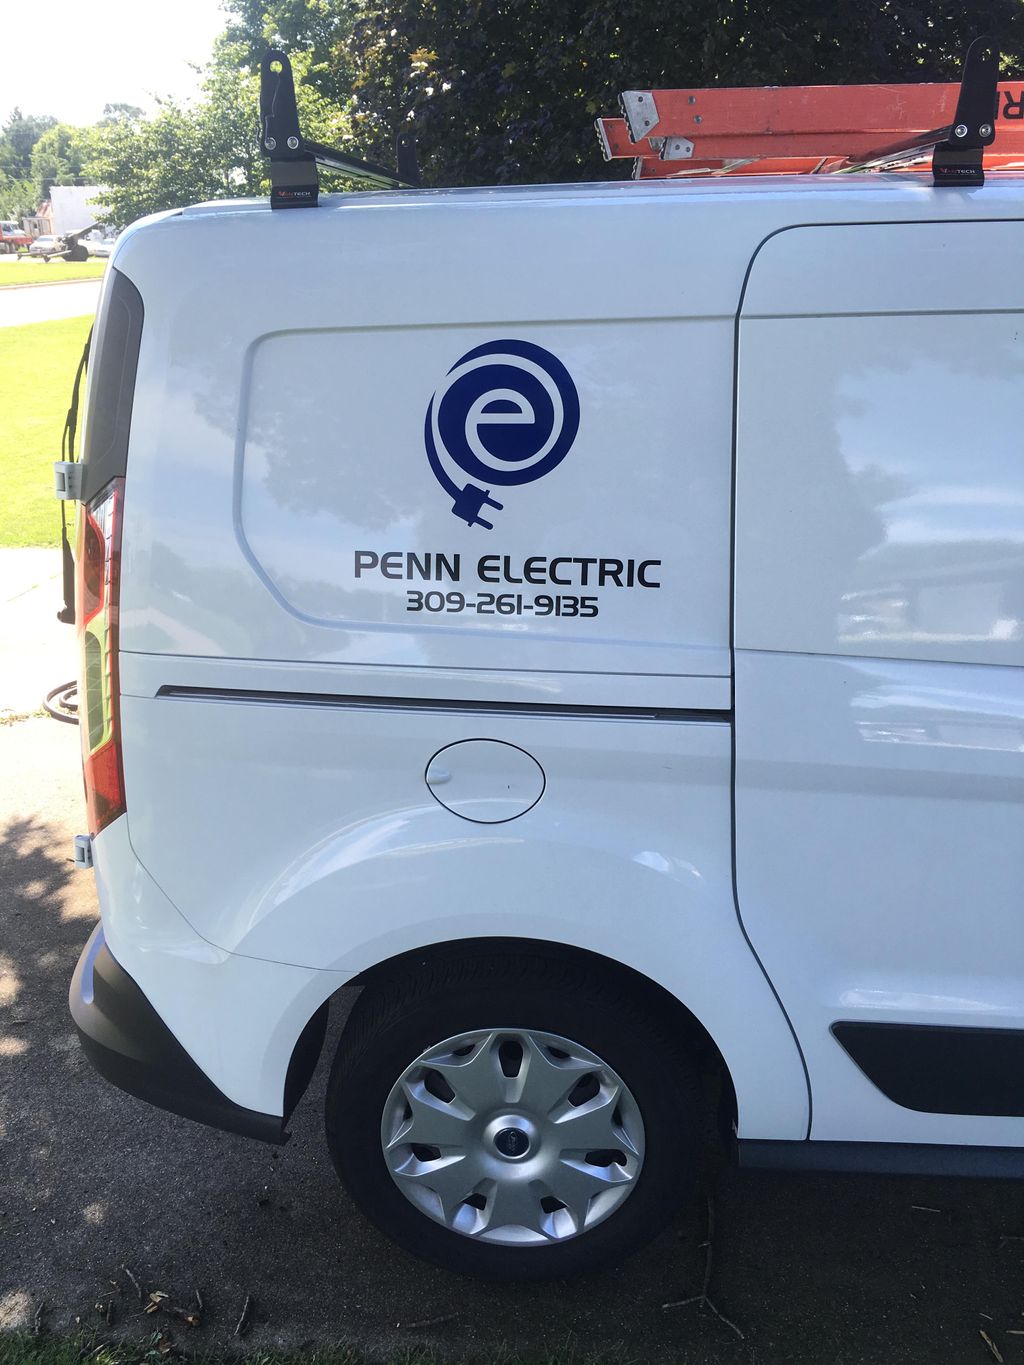 Penn Electric